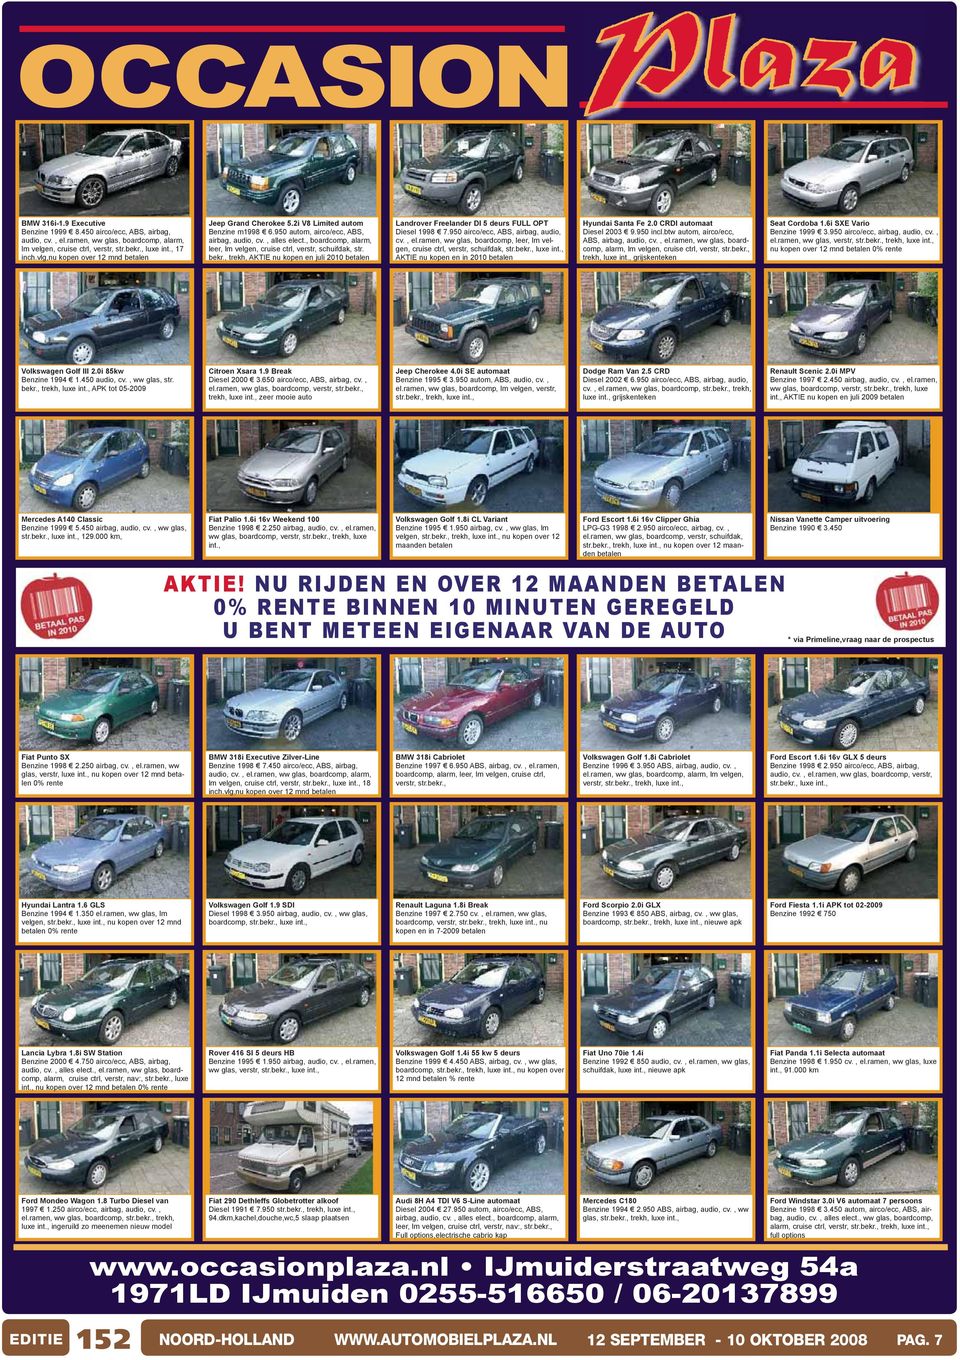 , trekh, AKTIE nu kopen en juli 2010 betalen Landrover Freelander DI 5 deurs FULL OPT Diesel 1998 7.950 airco/ecc, ABS, airbag, audio, cv., el.